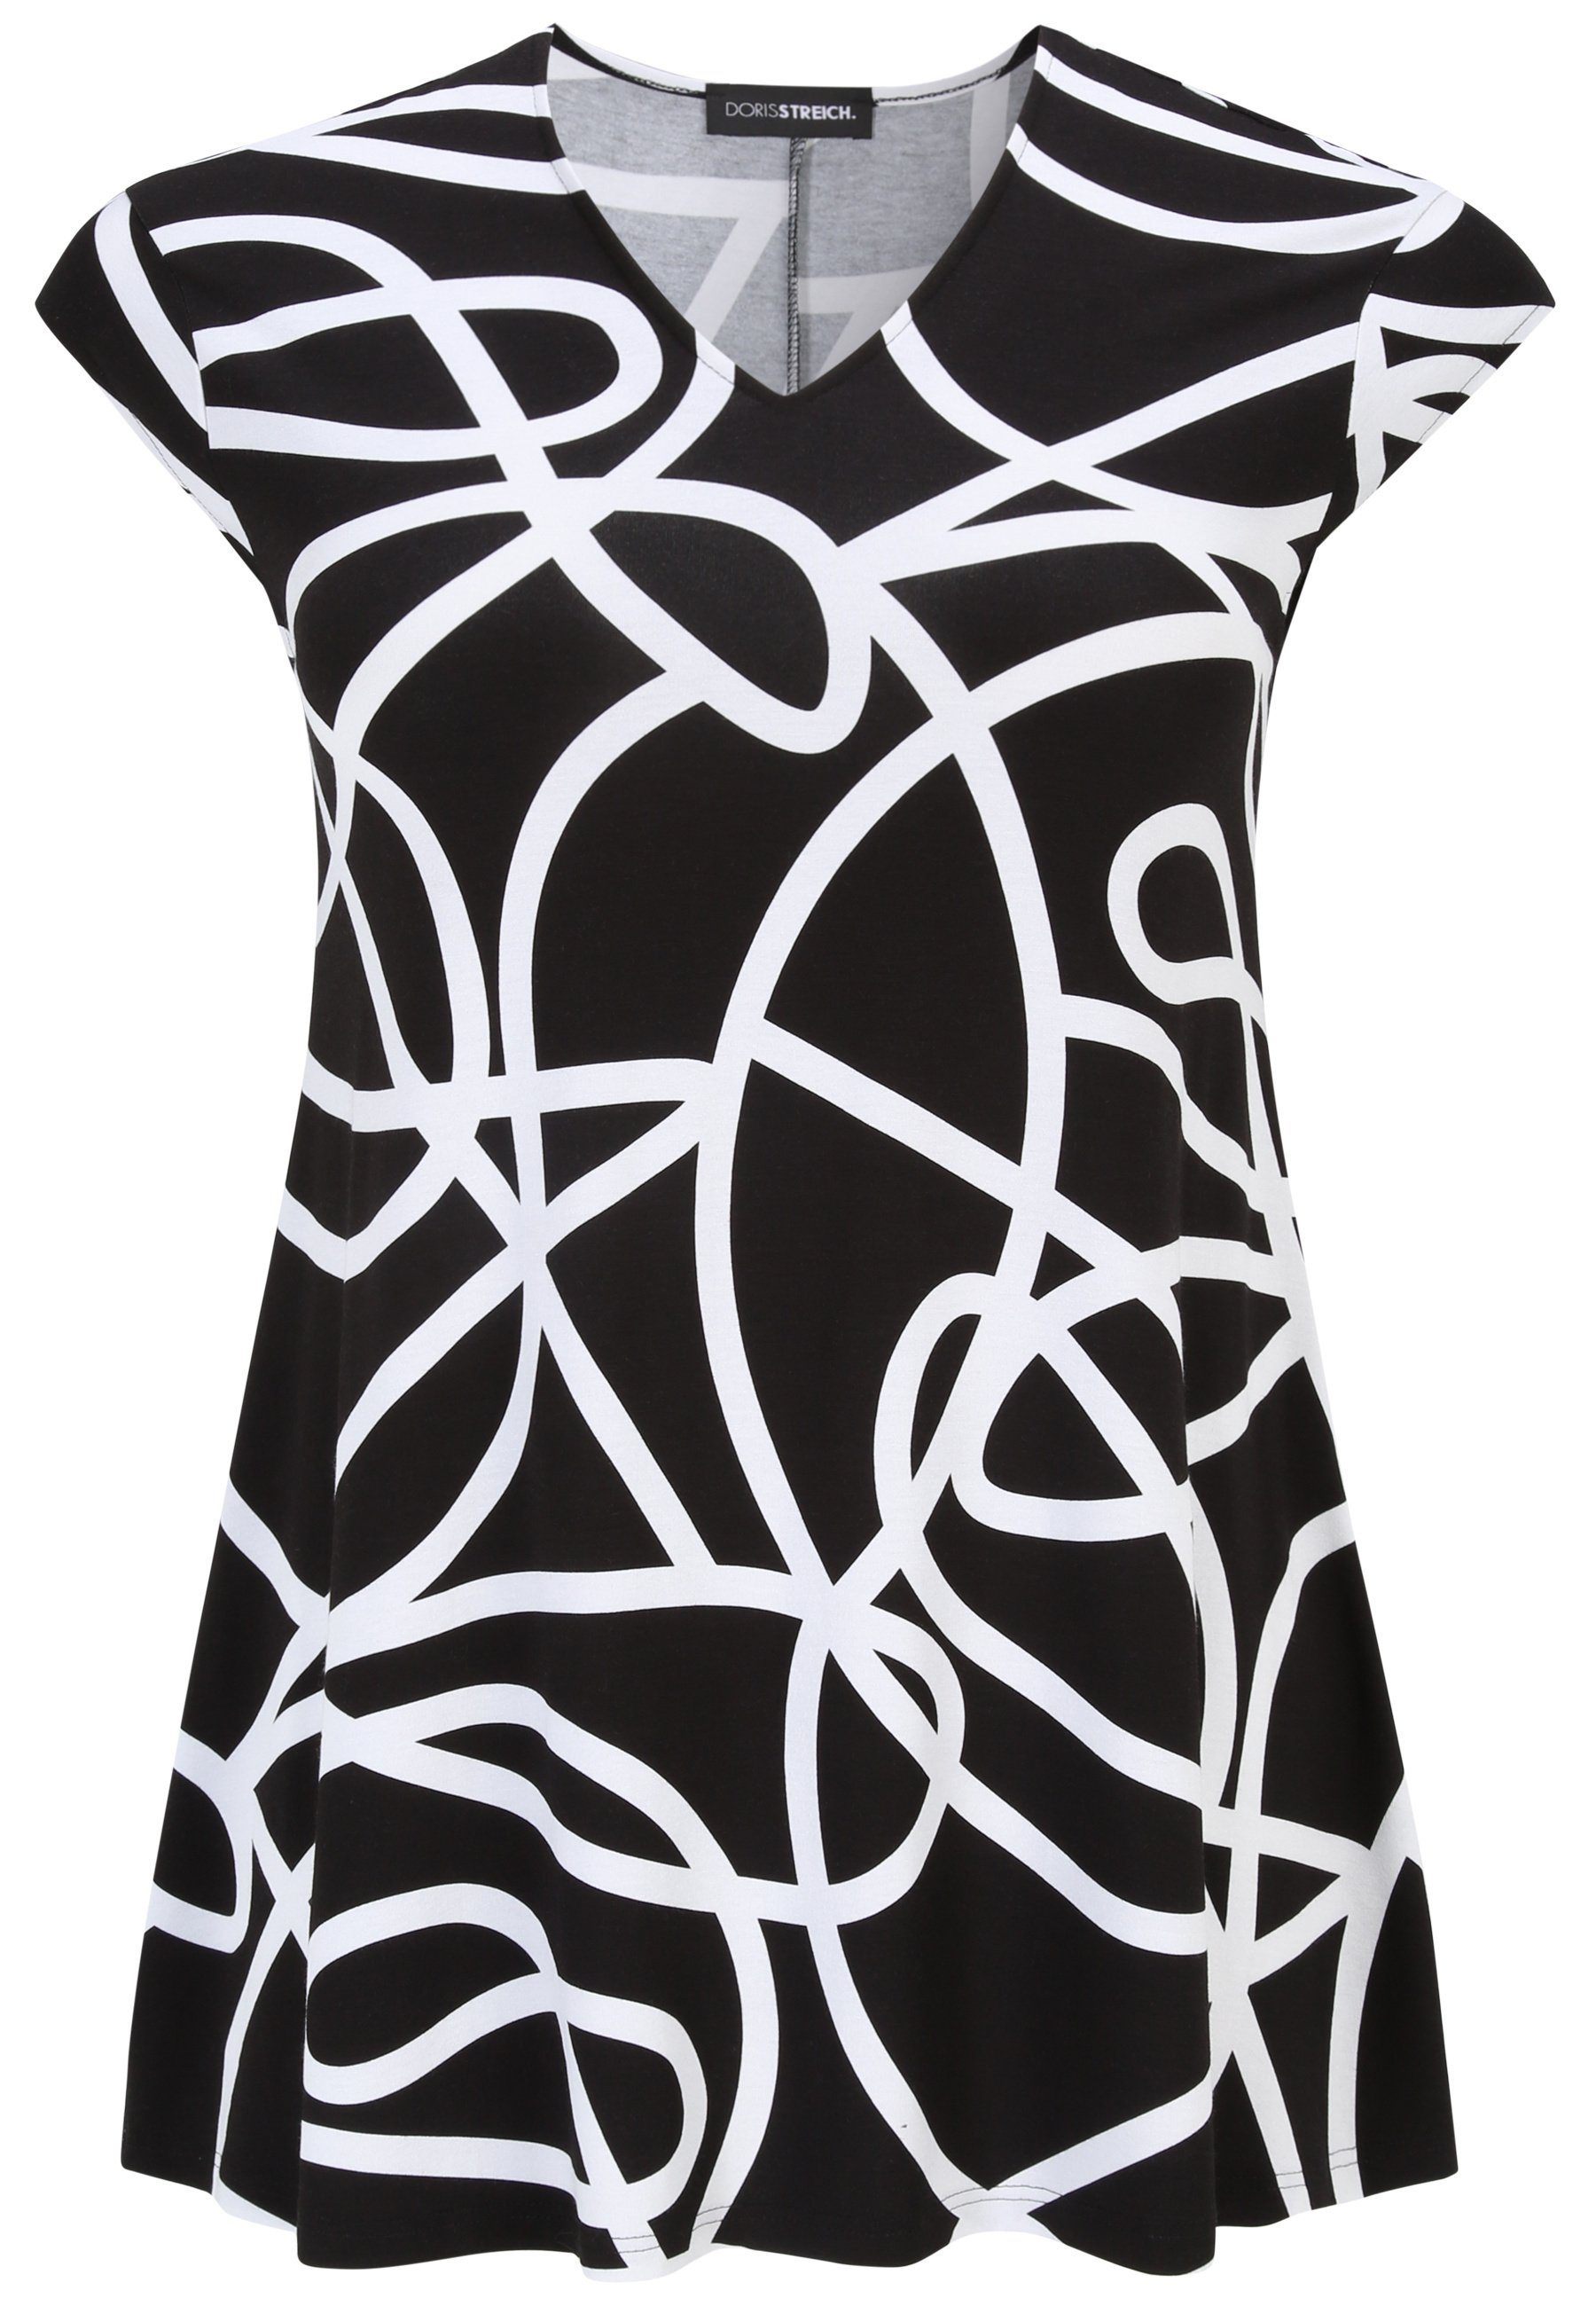 Doris Streich modernem Long-Shirt mit wirken Sie Läßt schlanker Grafik-Print Design, mit Tunika Größe eine